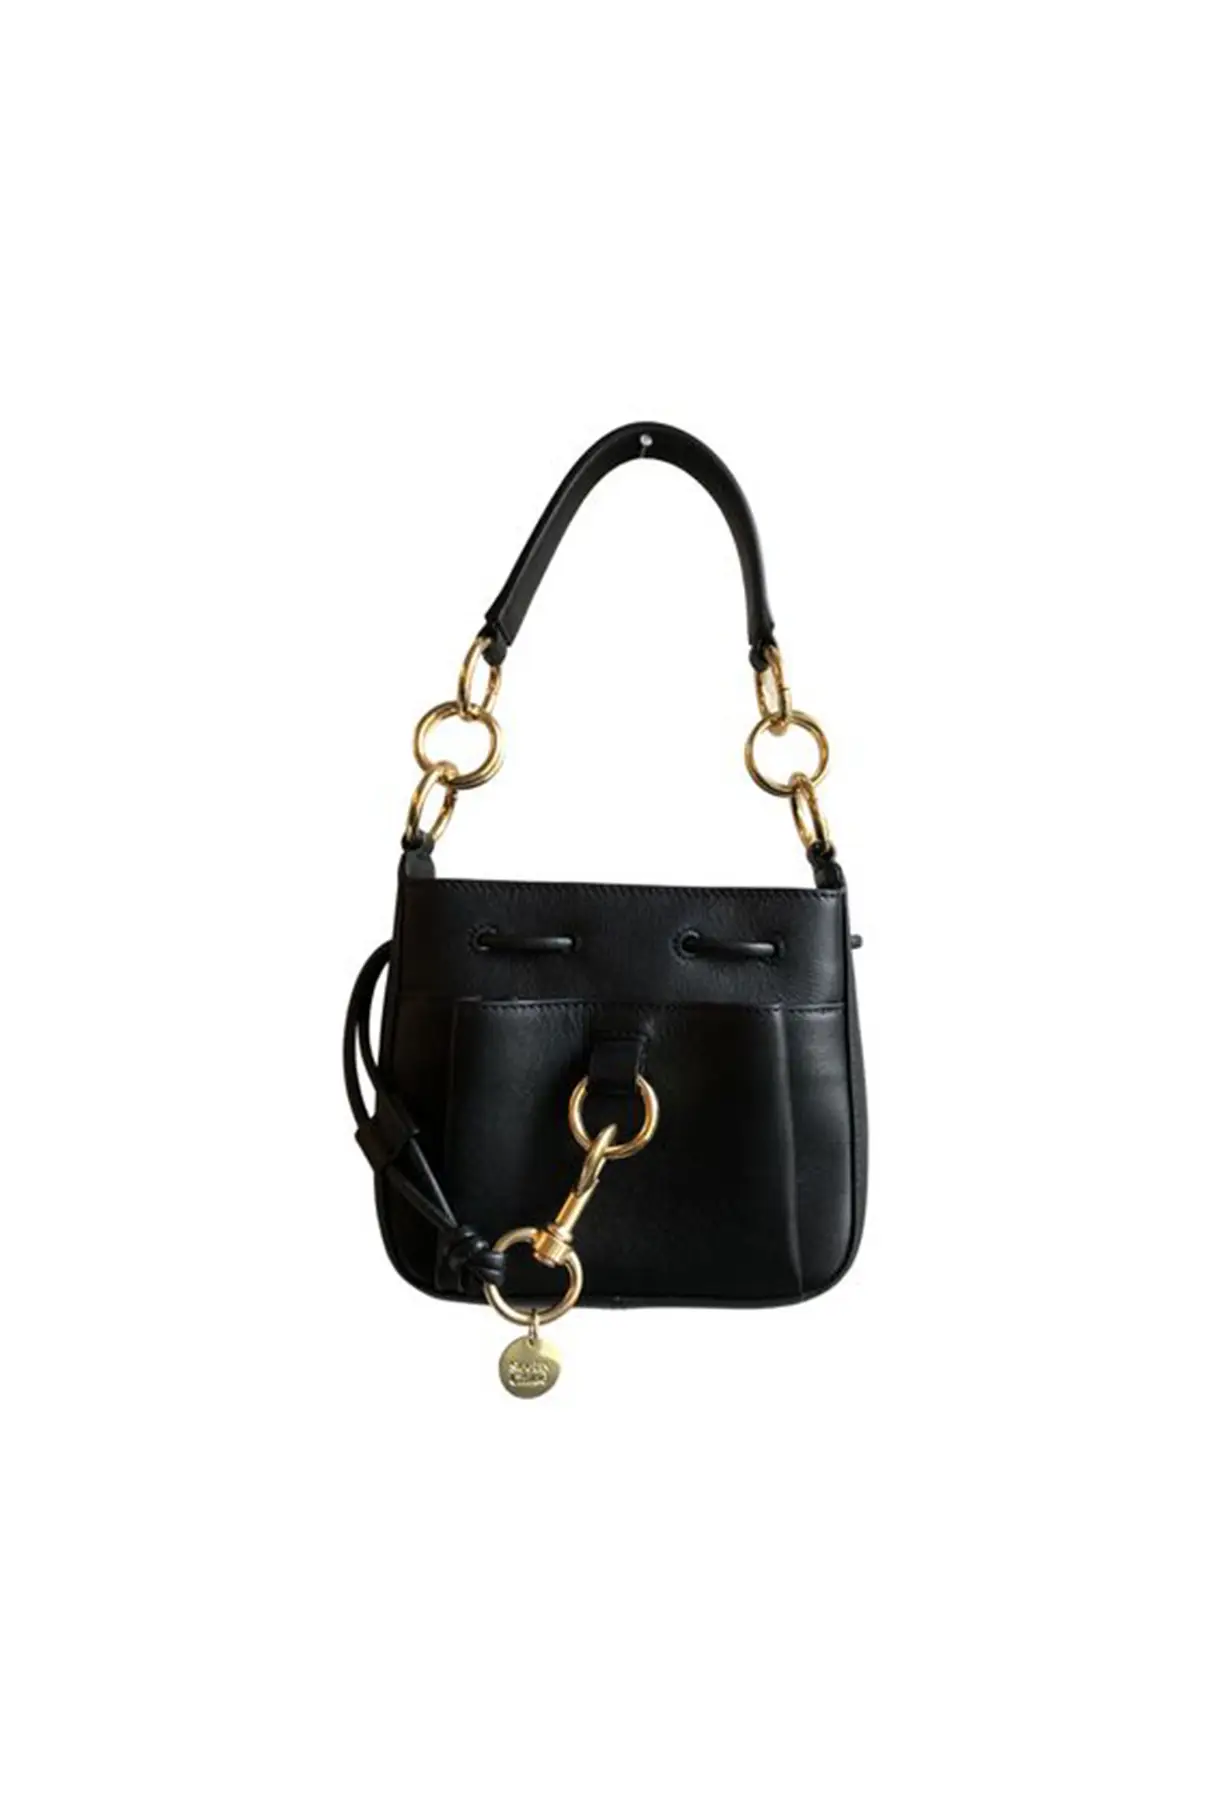 see-by-chloe-handbag-in-black-leather-bucket-bag.jpg